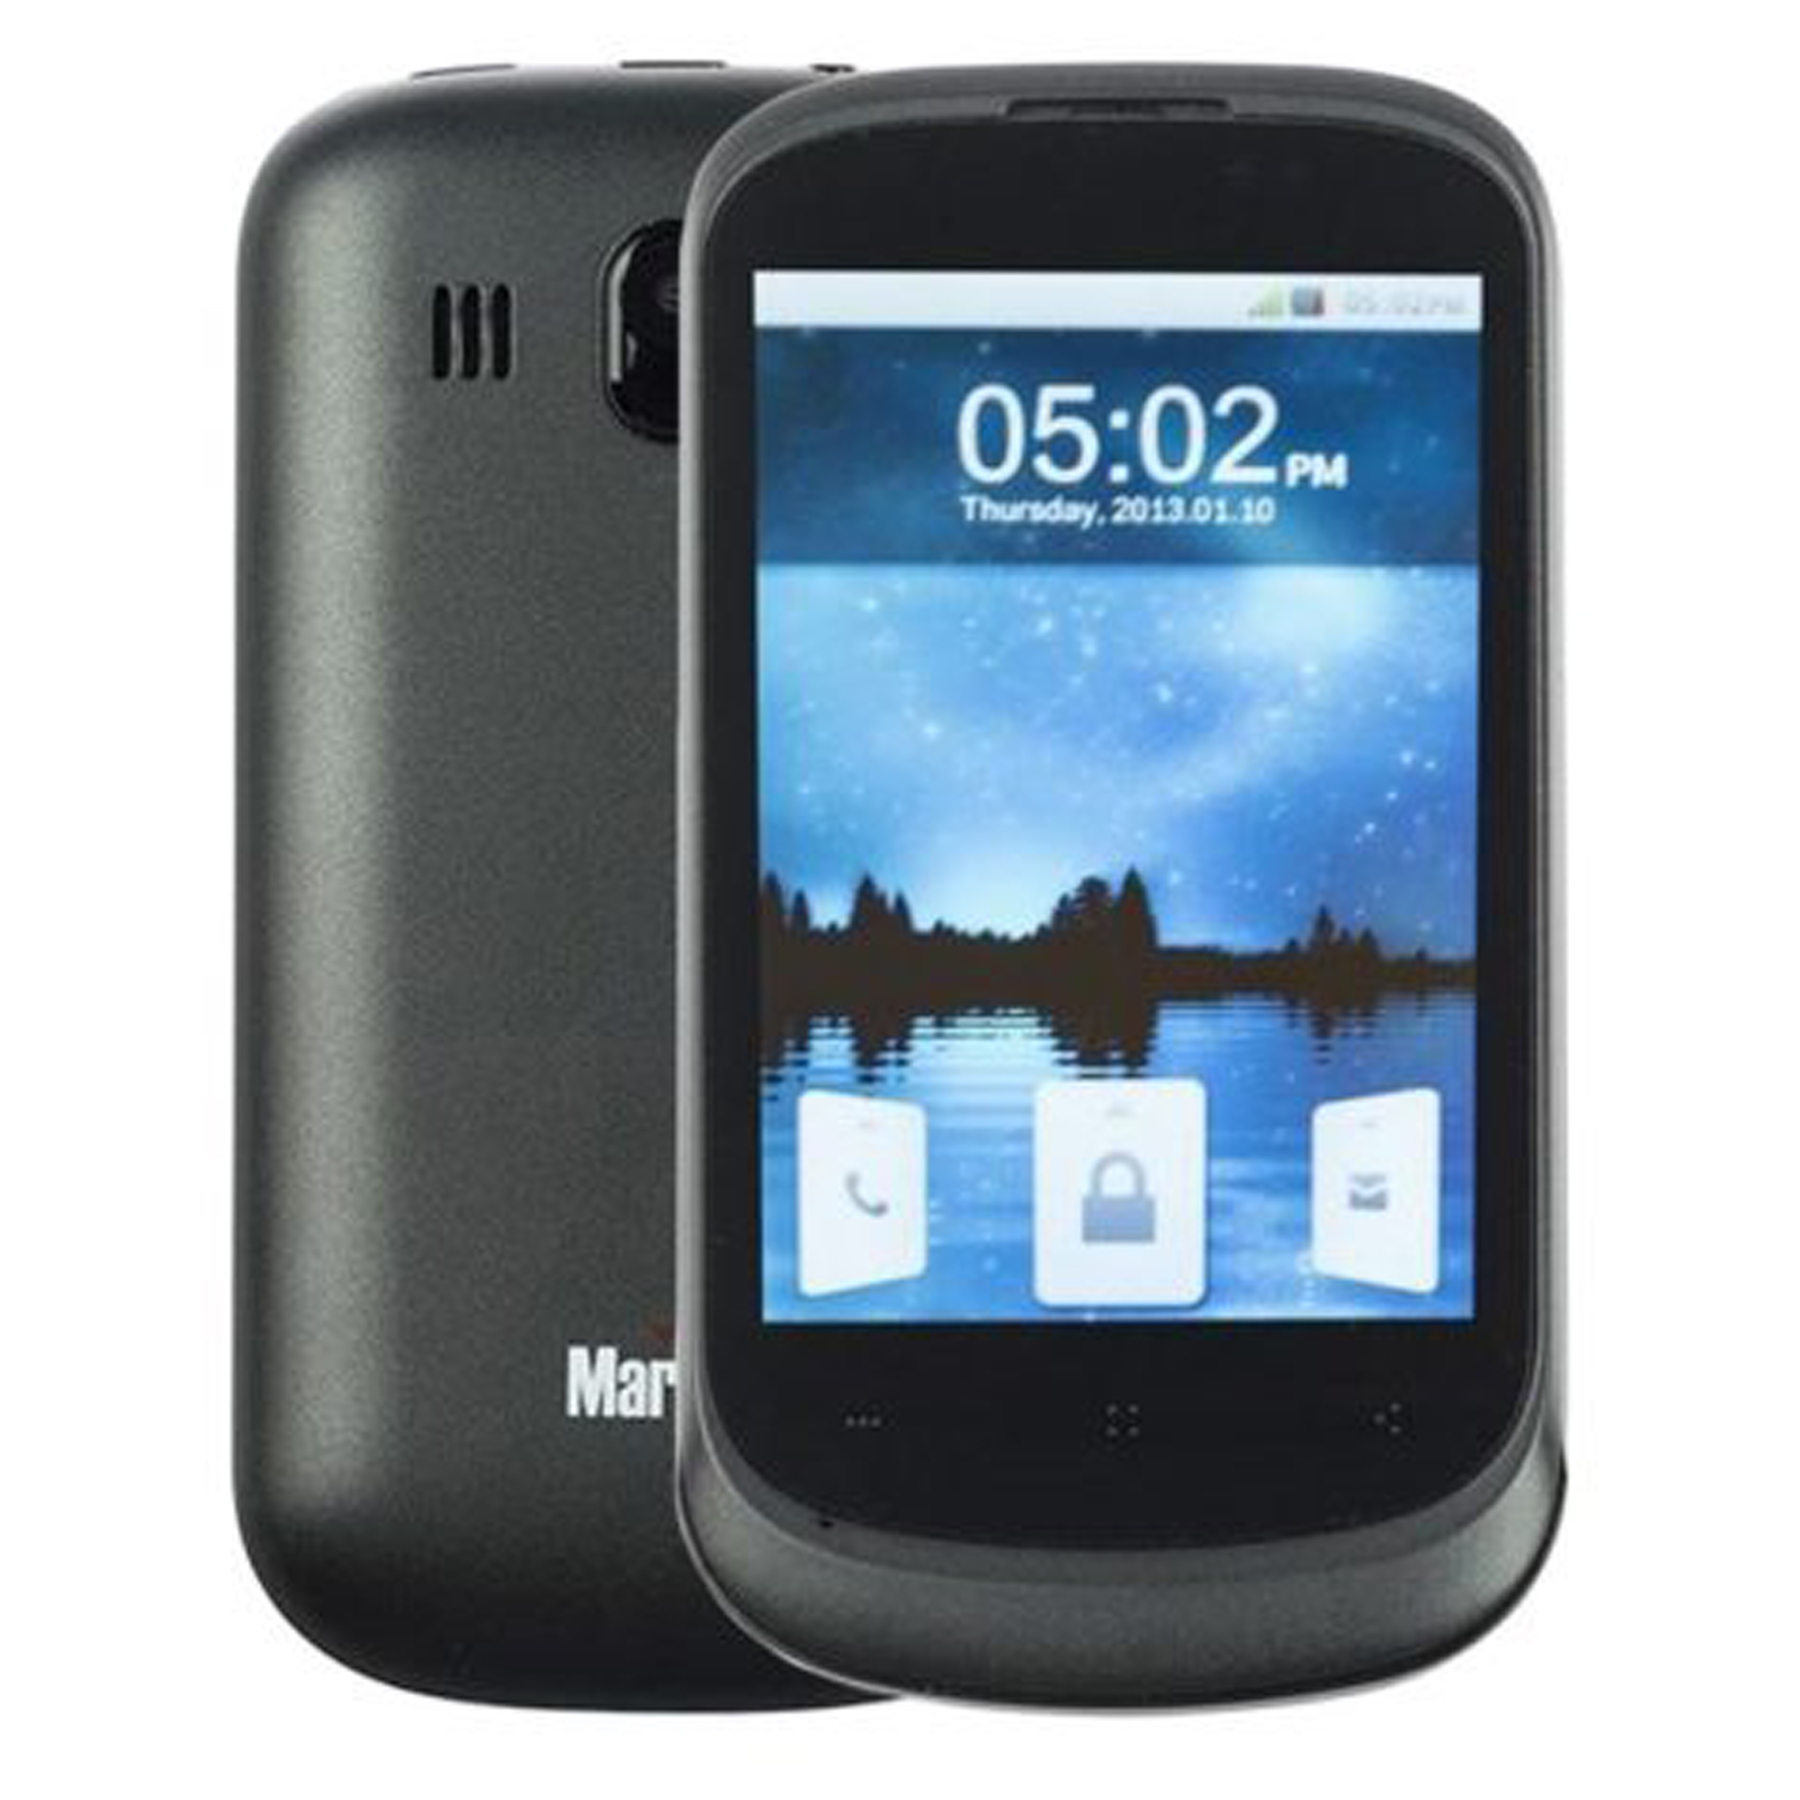 گوشی موبایل مارشال مدل ME-363 دو سیم کارت